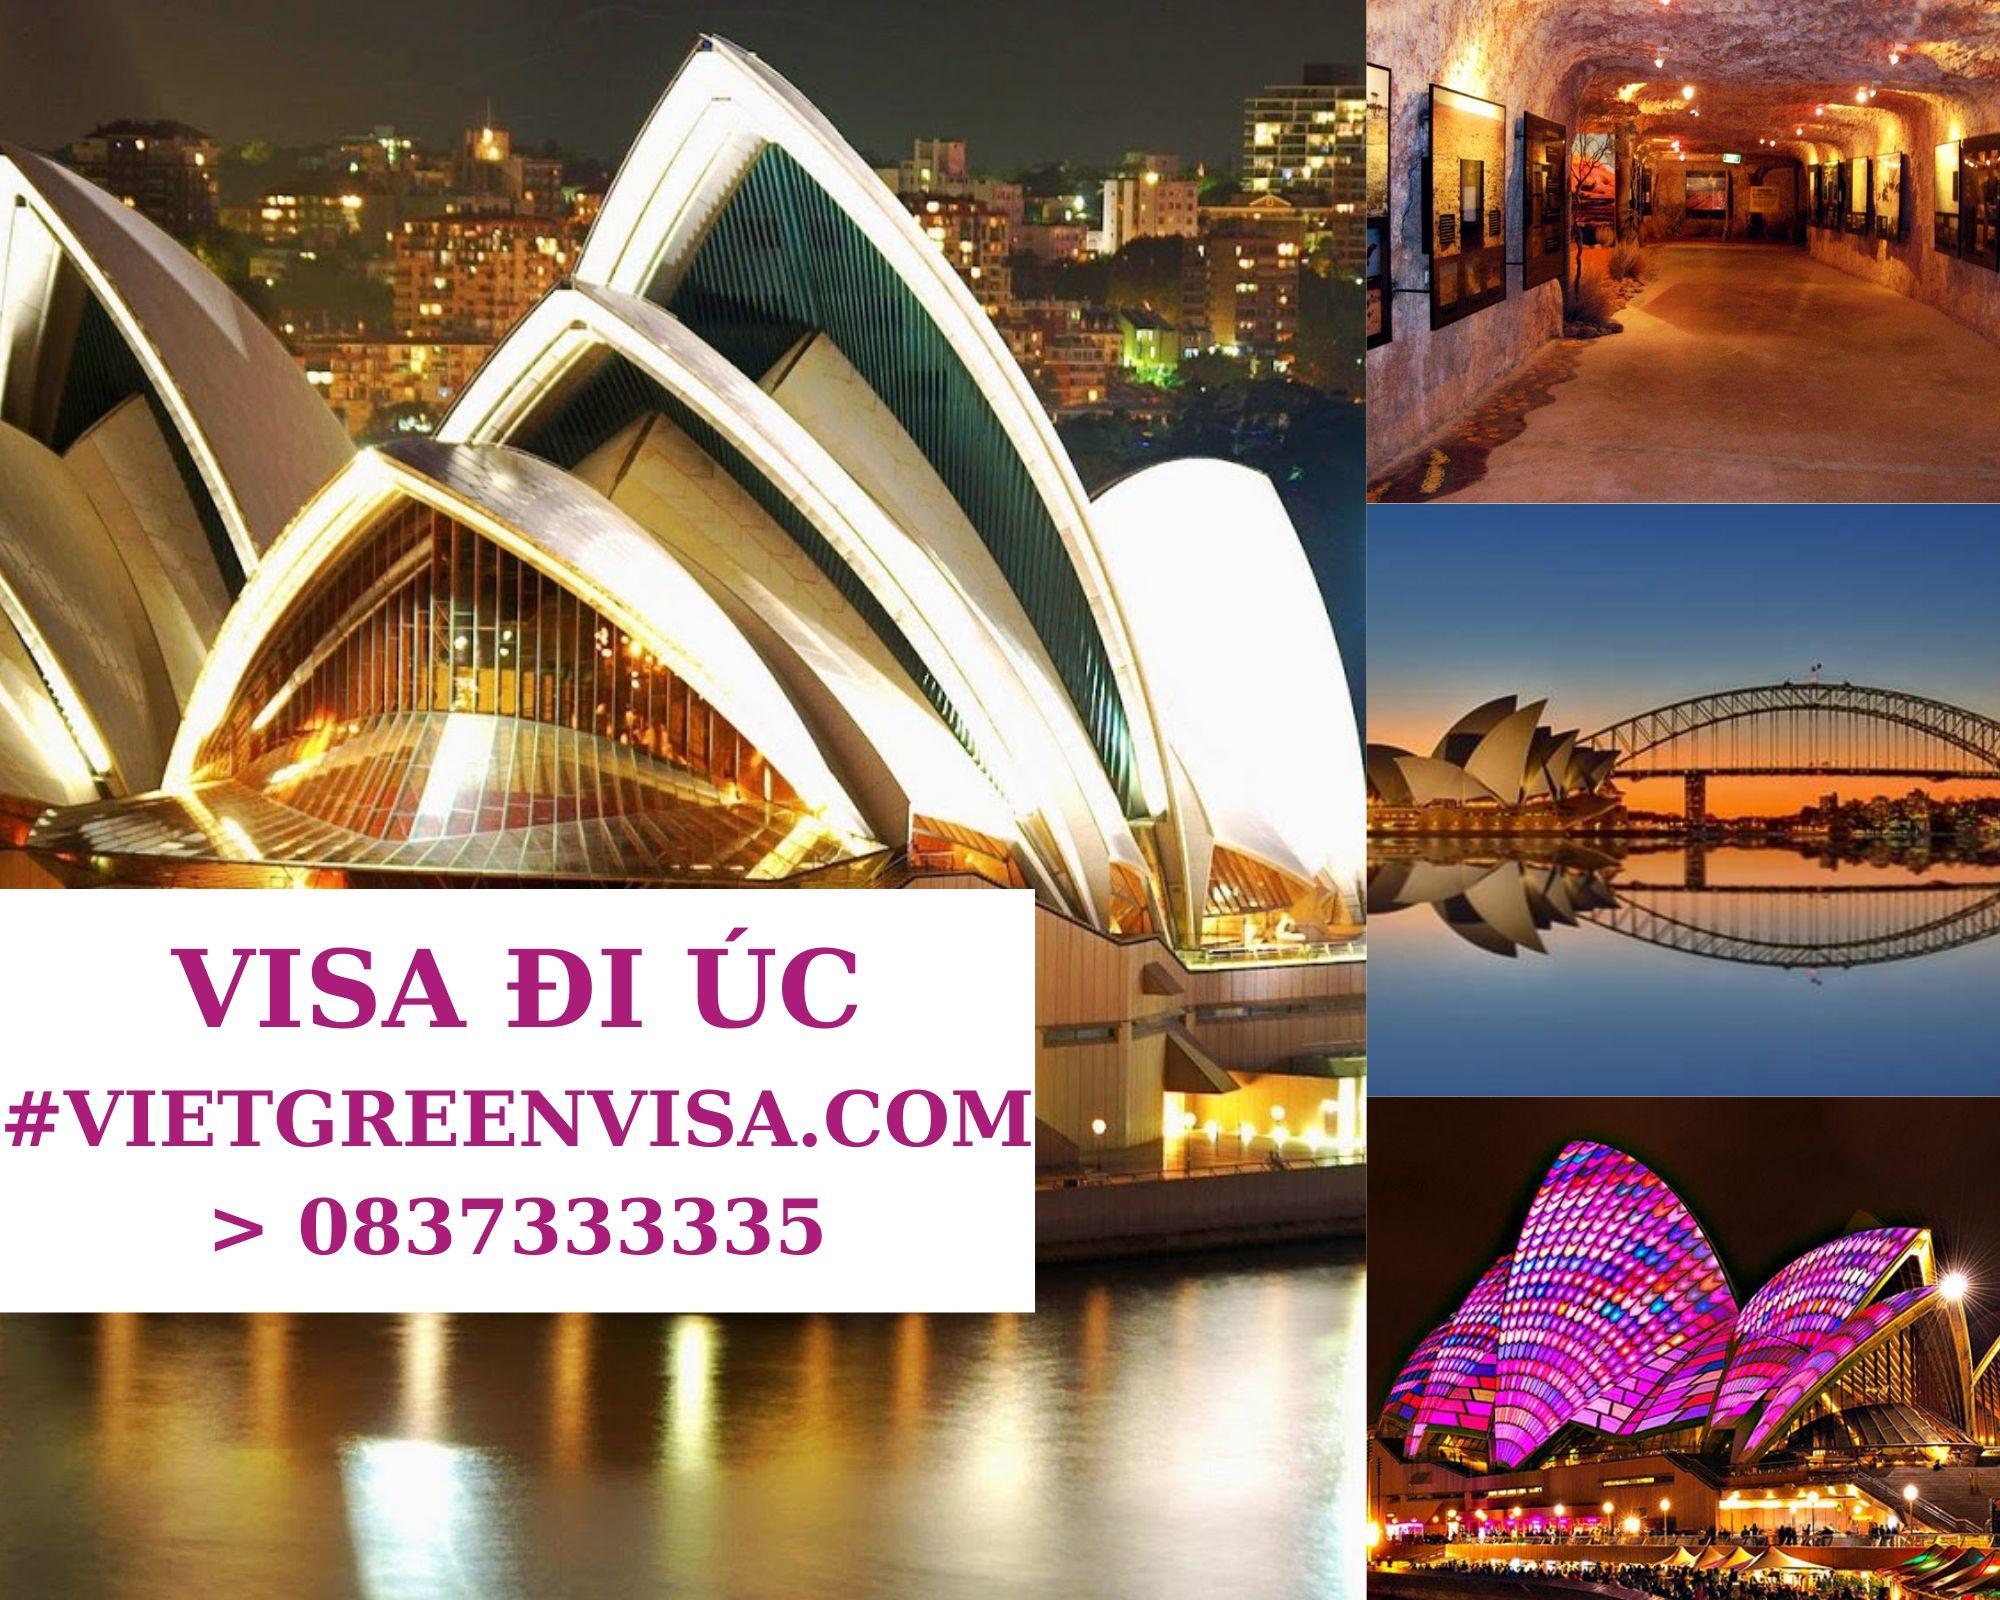 Dịch vụ làm Visa Úc thăm thân uy tín, nhanh chóng, giá rẻ